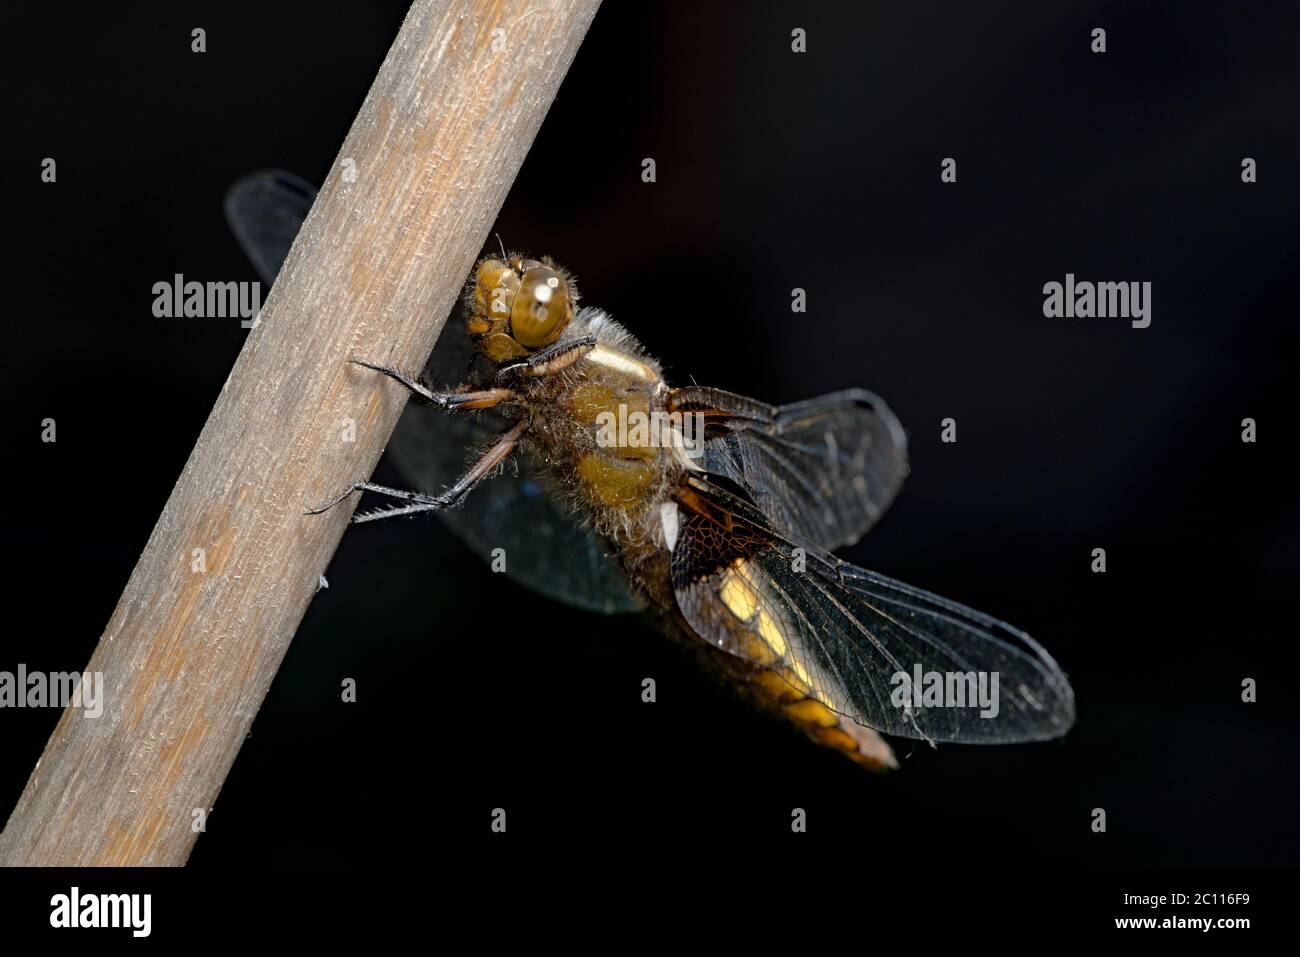 La libellule à tête large femelle se distingue sur le fond sombre avec la partie avant des jambes relevée. Visage et grand œil transparent clairement visibles. Banque D'Images